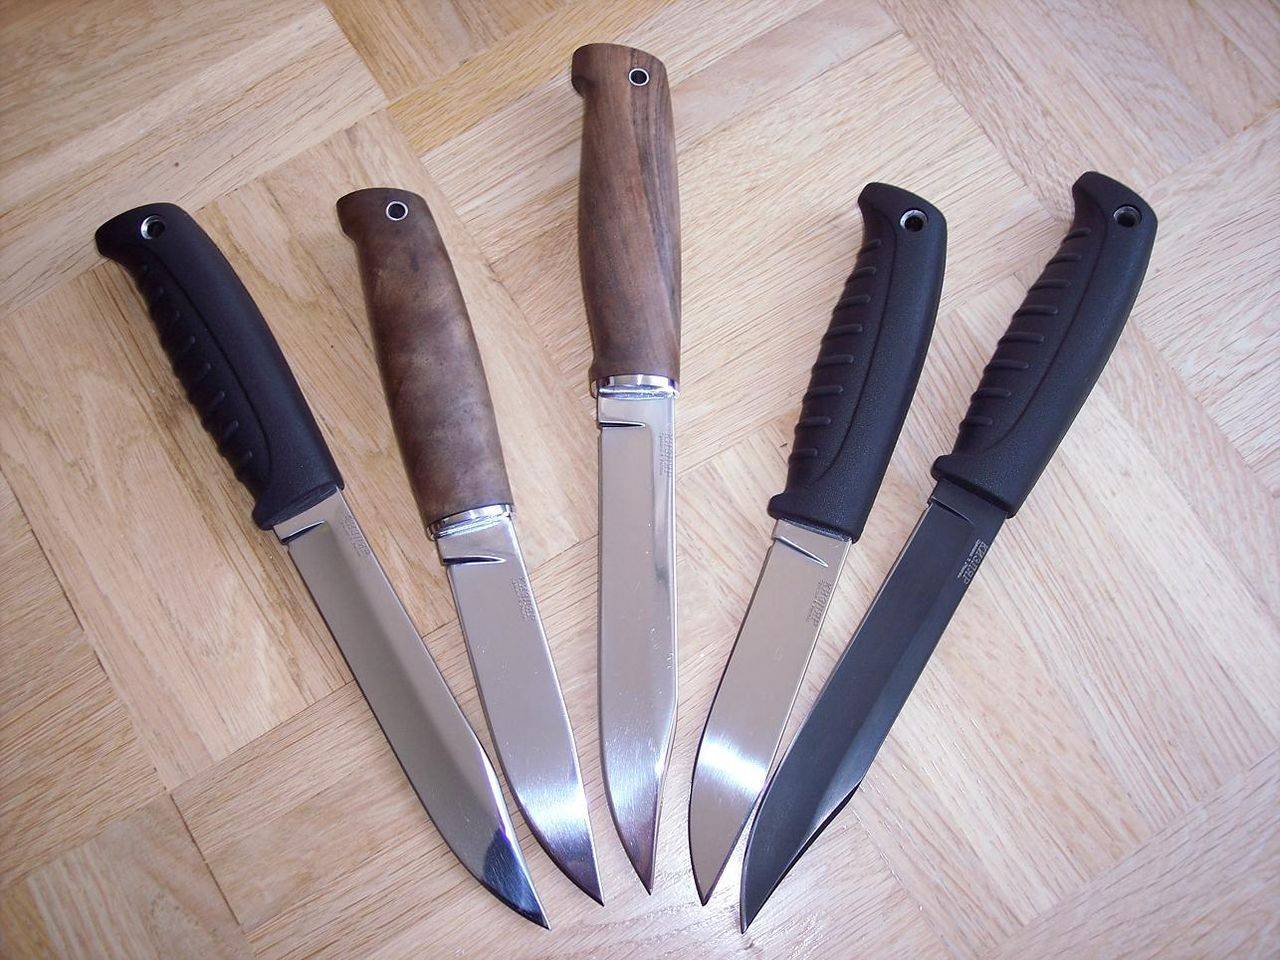 Финка нквд: размеры и фото легендарного ножа